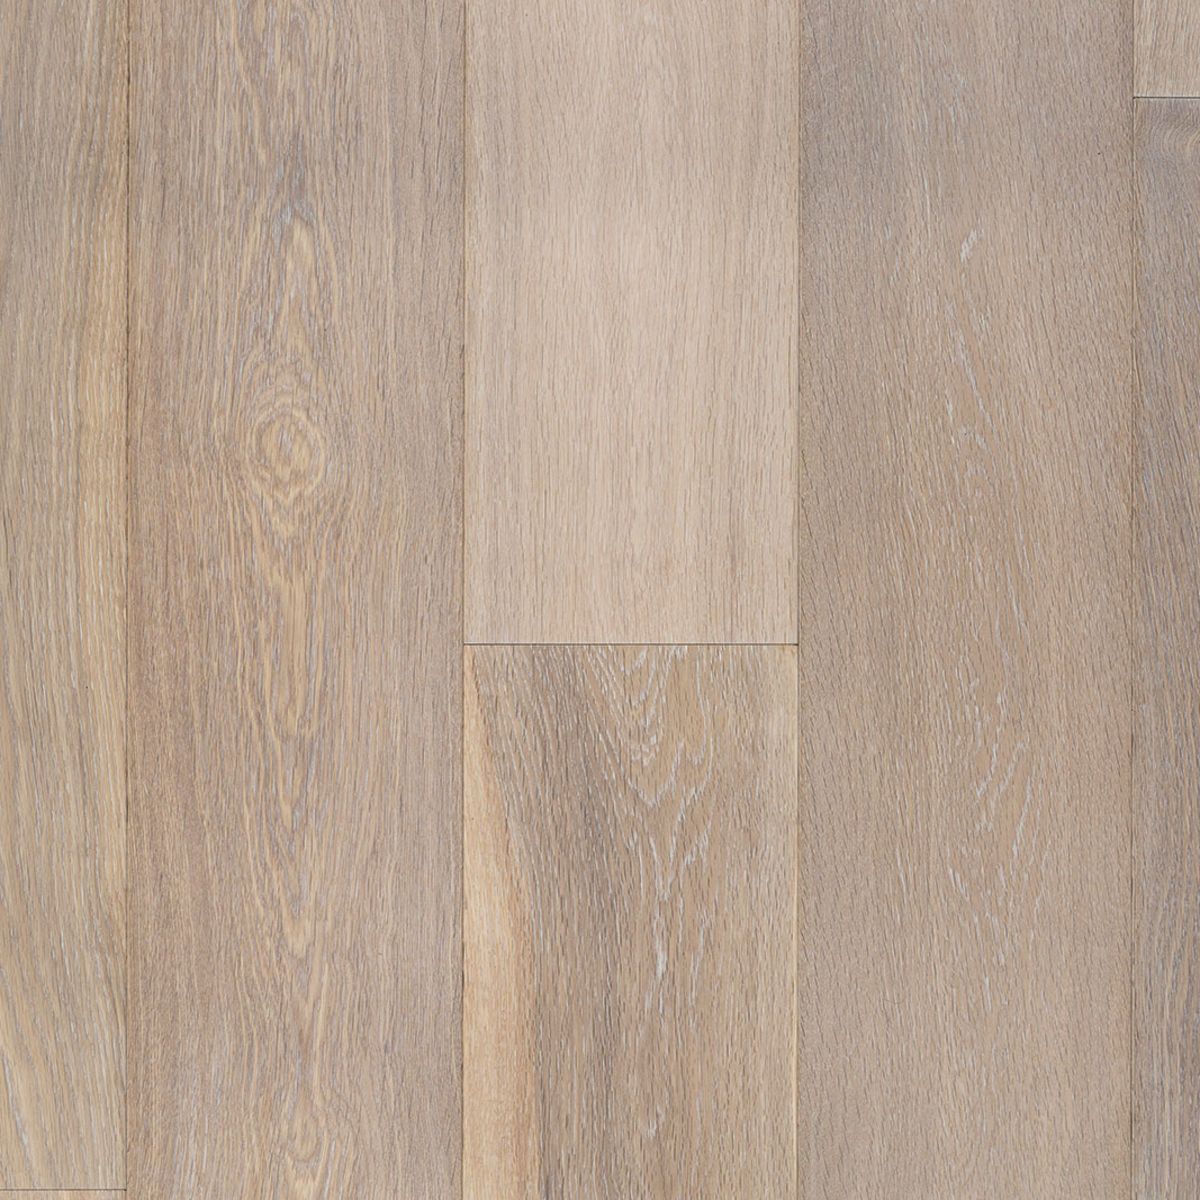 Hardwood | Duchateau Vernal Lugano | Flooring Liquidators